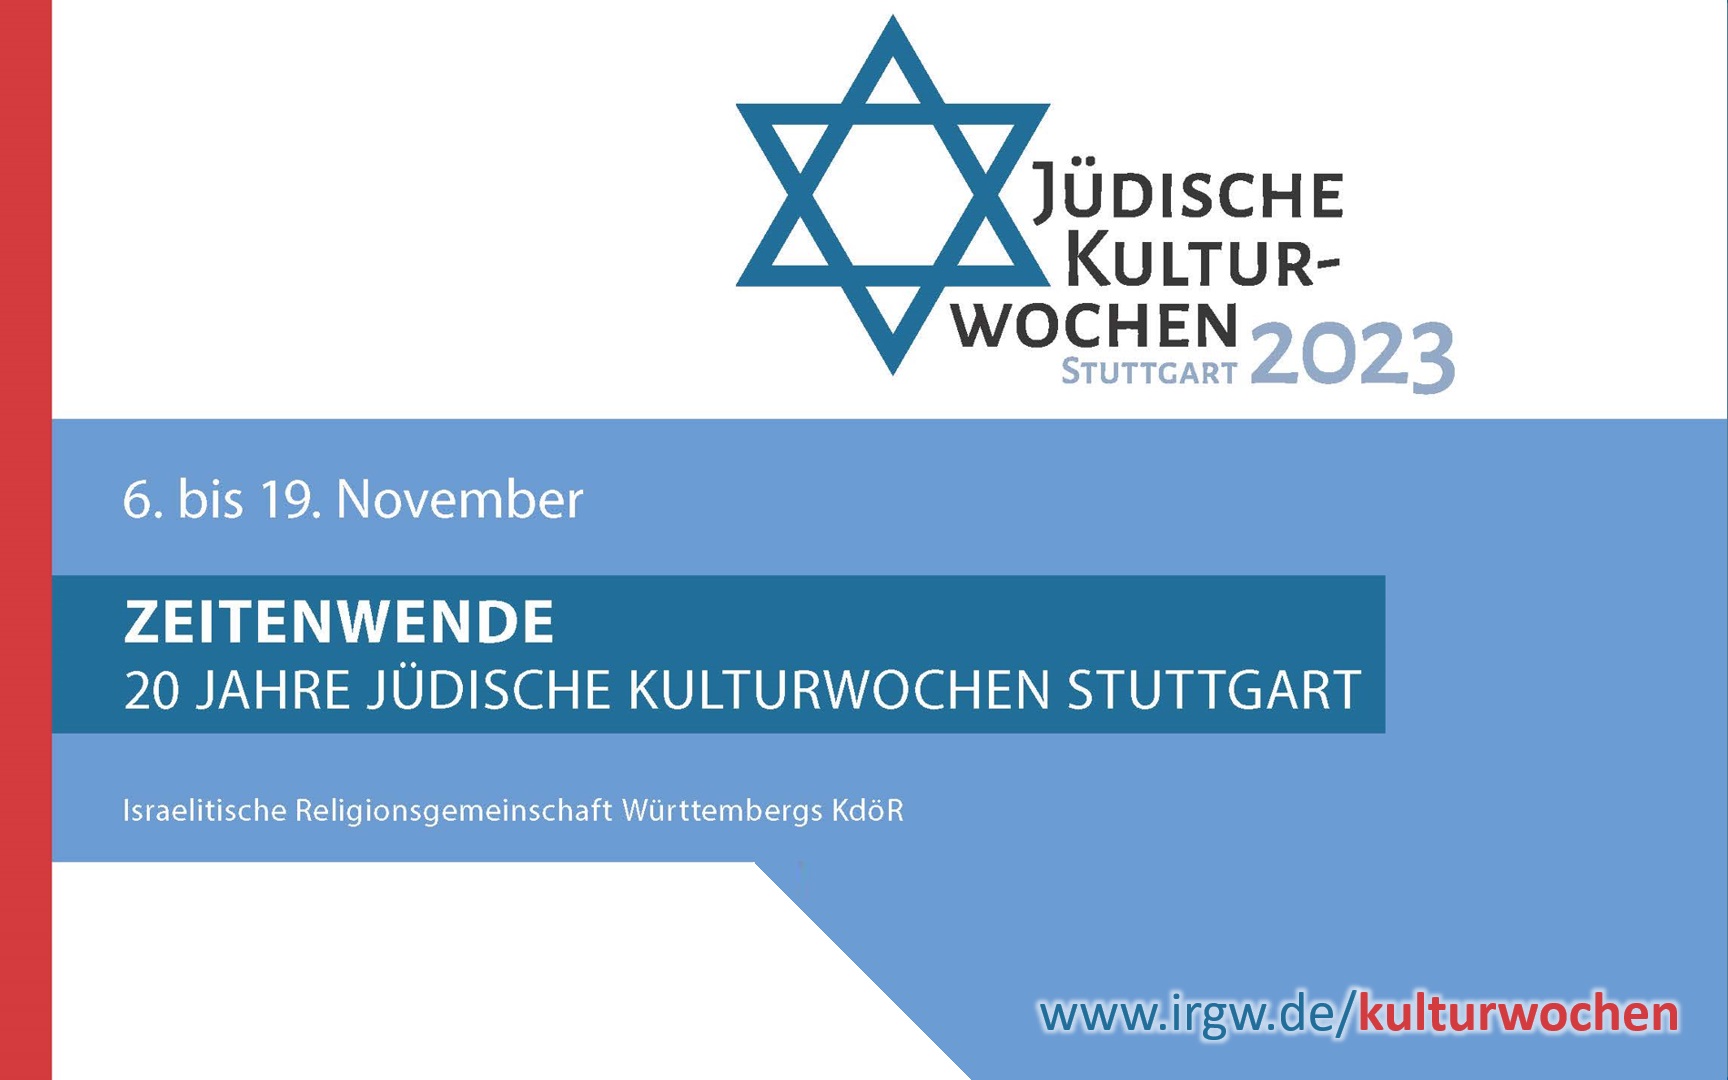 Jüdische Kulturwochen Stuttgart 2023 - ZEITENWENDE - 20 Jahre Jüdische Kulturwochen Stuttgart vom 6. bis 19. November 2023 - mehr unter www.irgw.de/kulturwochen